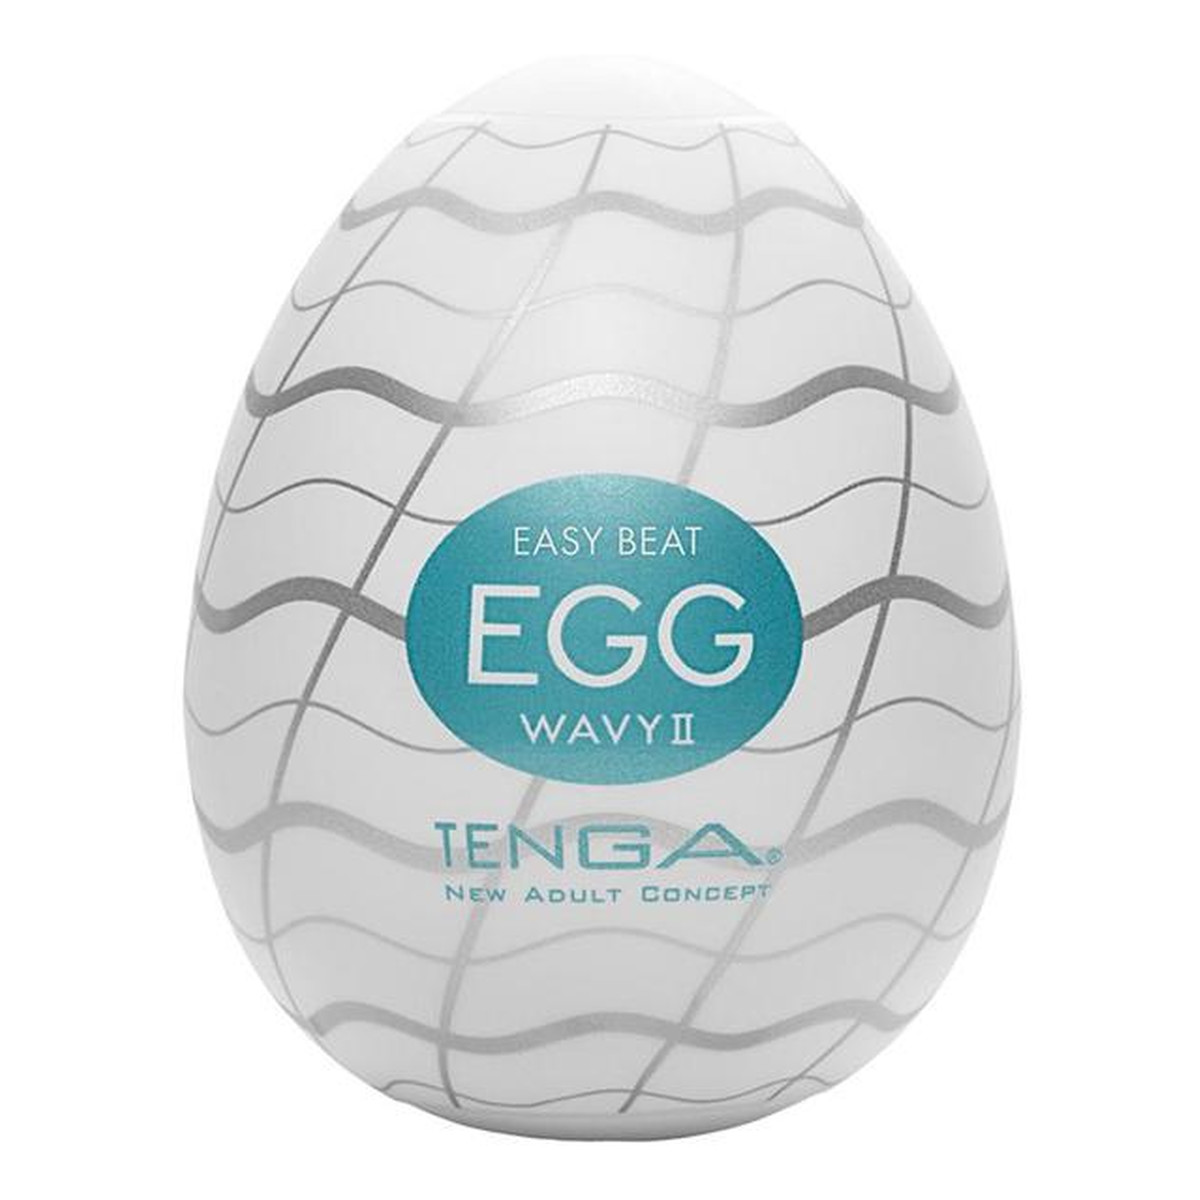 Tenga Easy beat egg wavy ii jednorazowy masturbator w kształcie jajka